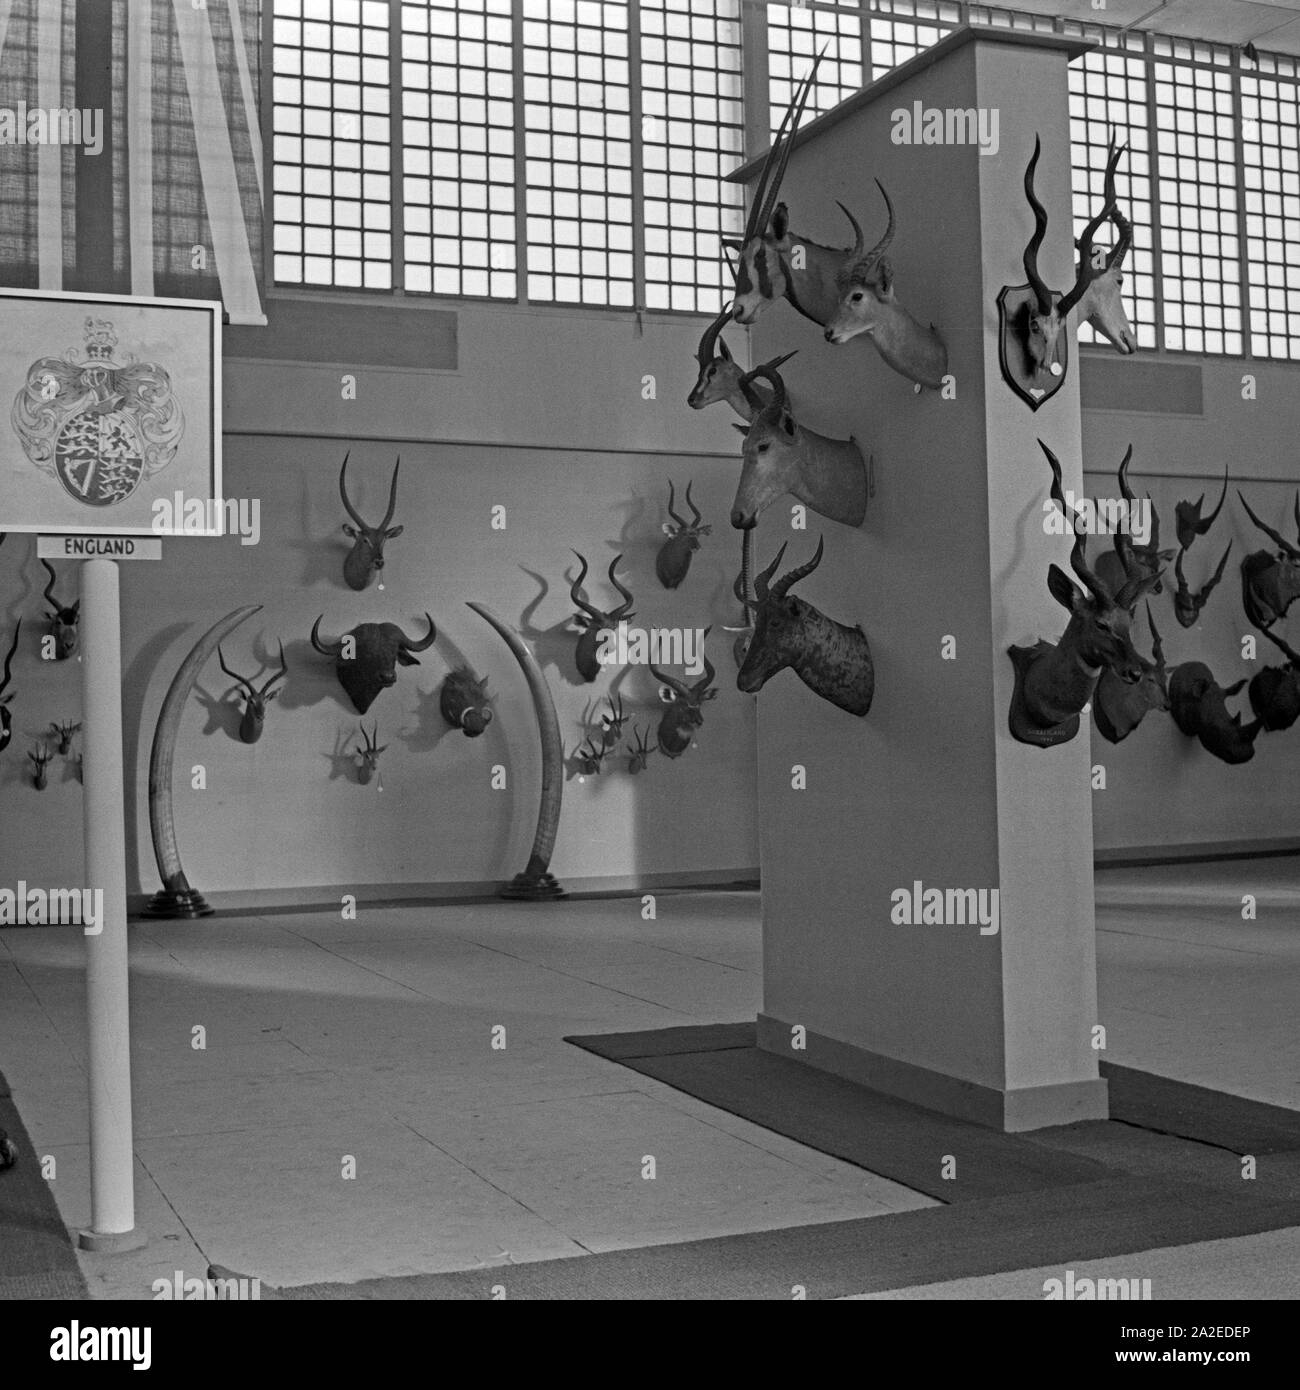 Britischer Pavillon auf der Internationalen Jagdaustellung Berlin 1937, Deutschland 1930er Jahre. British pavillon at the international hunting exhibition, Berlin 1937, Germany 1930s. Stock Photo